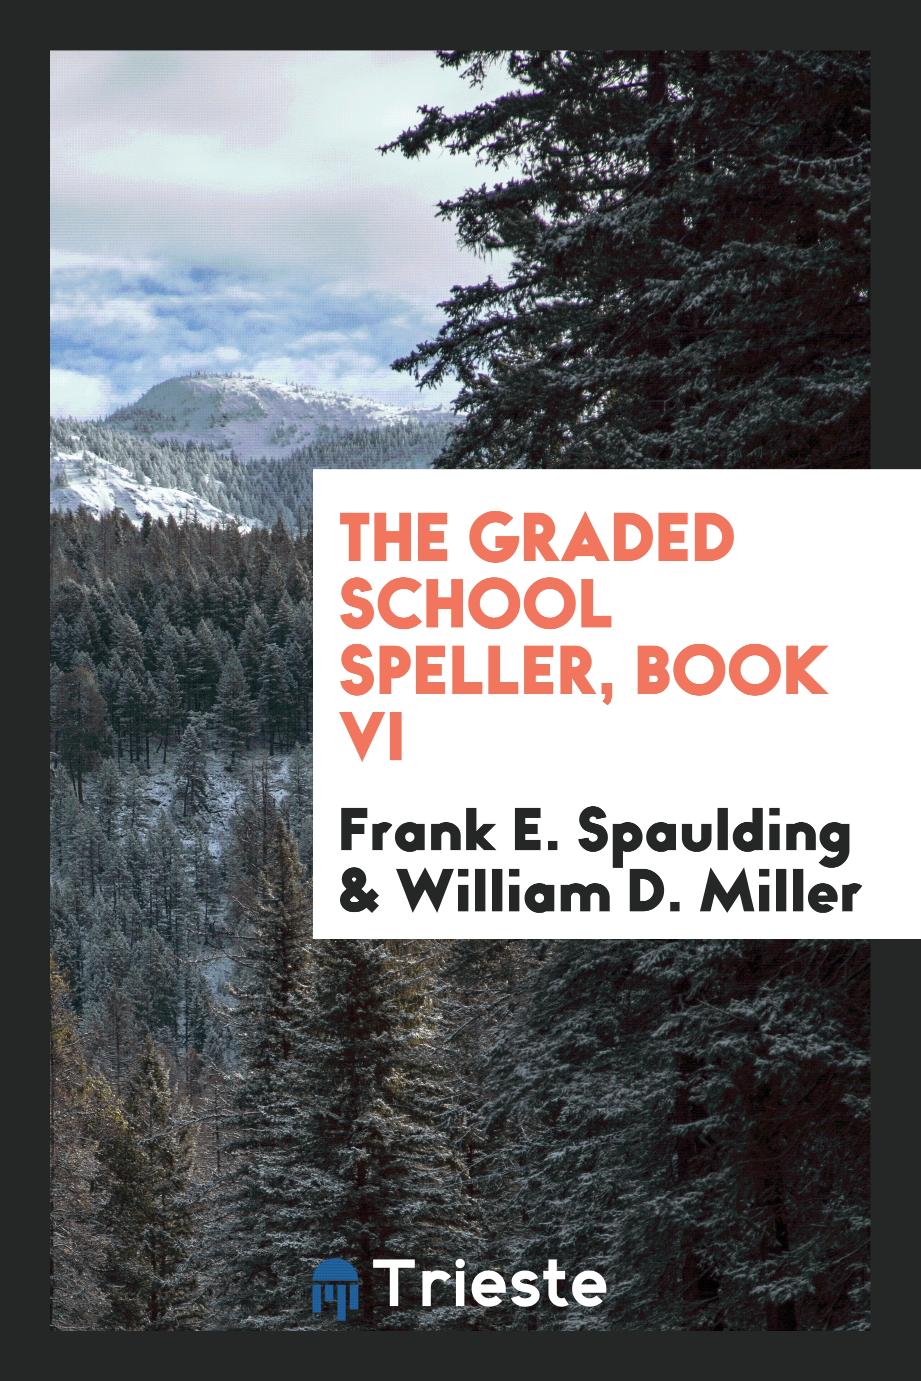 The Graded School Speller, book VI